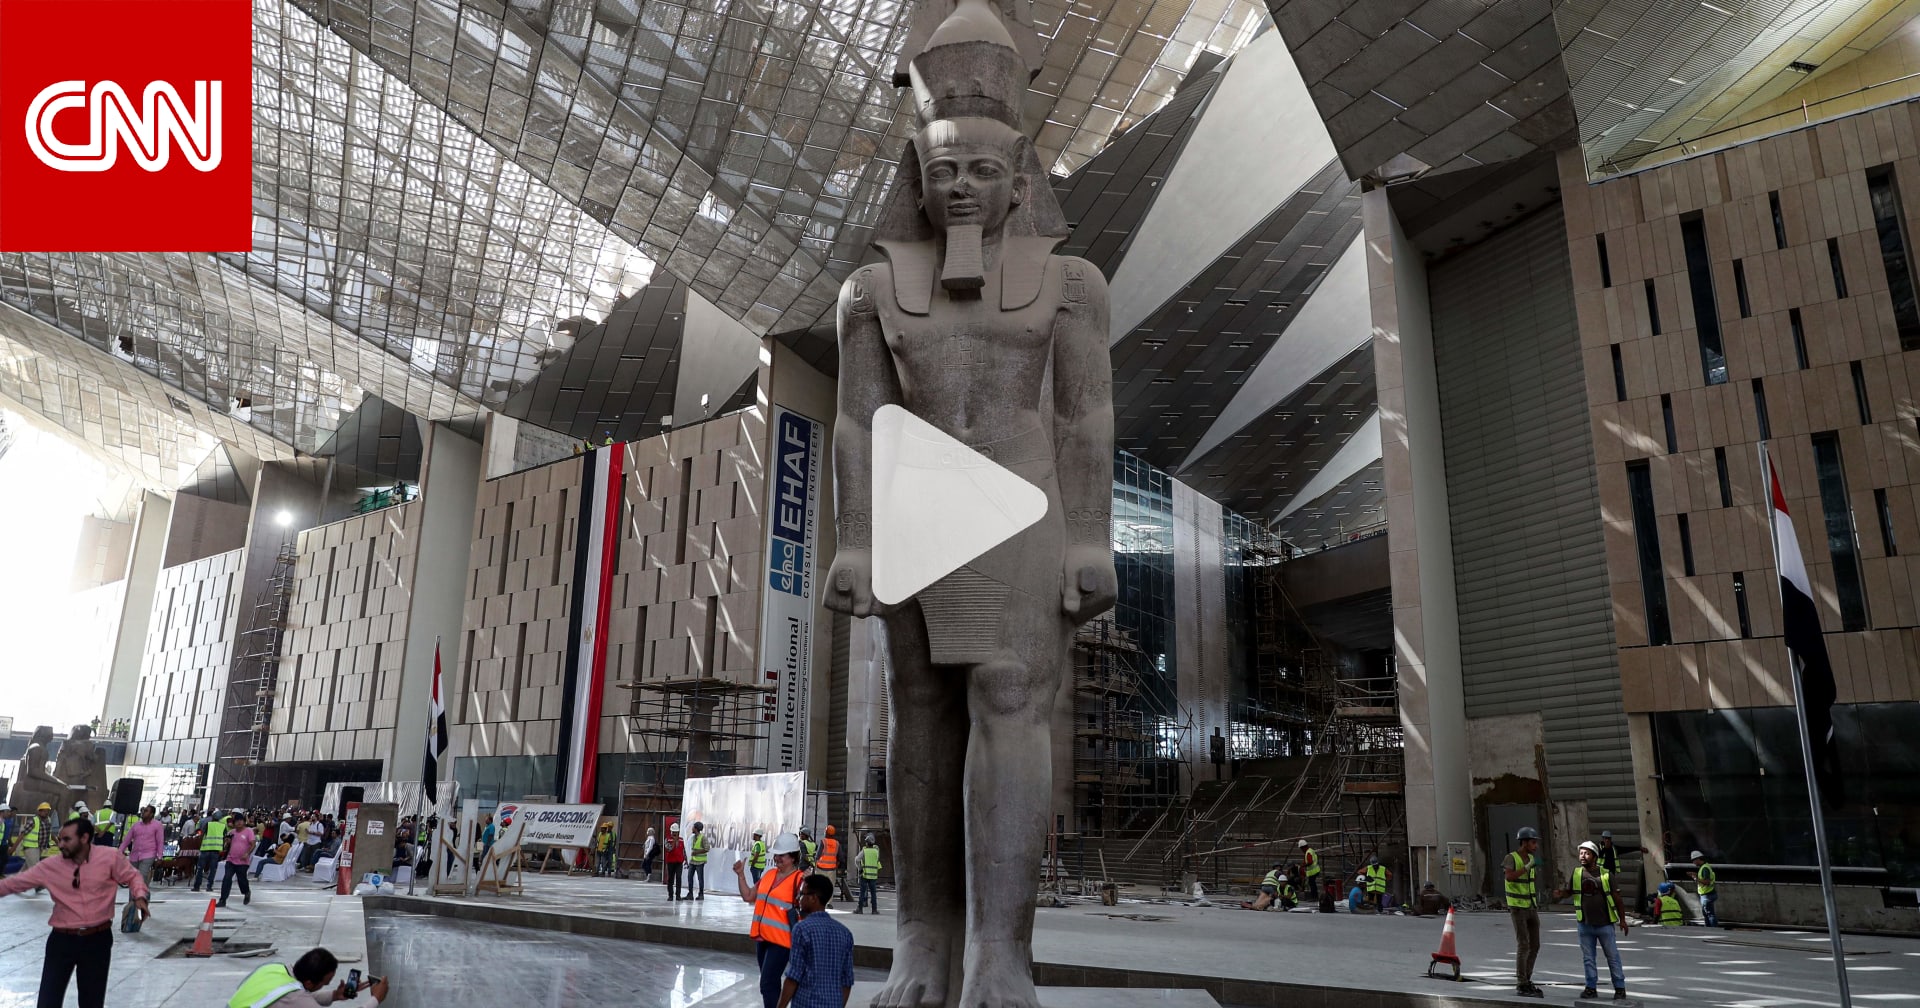 رئيس هيئة تنشيط السياحة المصرية: المتحف المصري سيكون الأكبر بالتاريخ لعرض حضارة واحدة